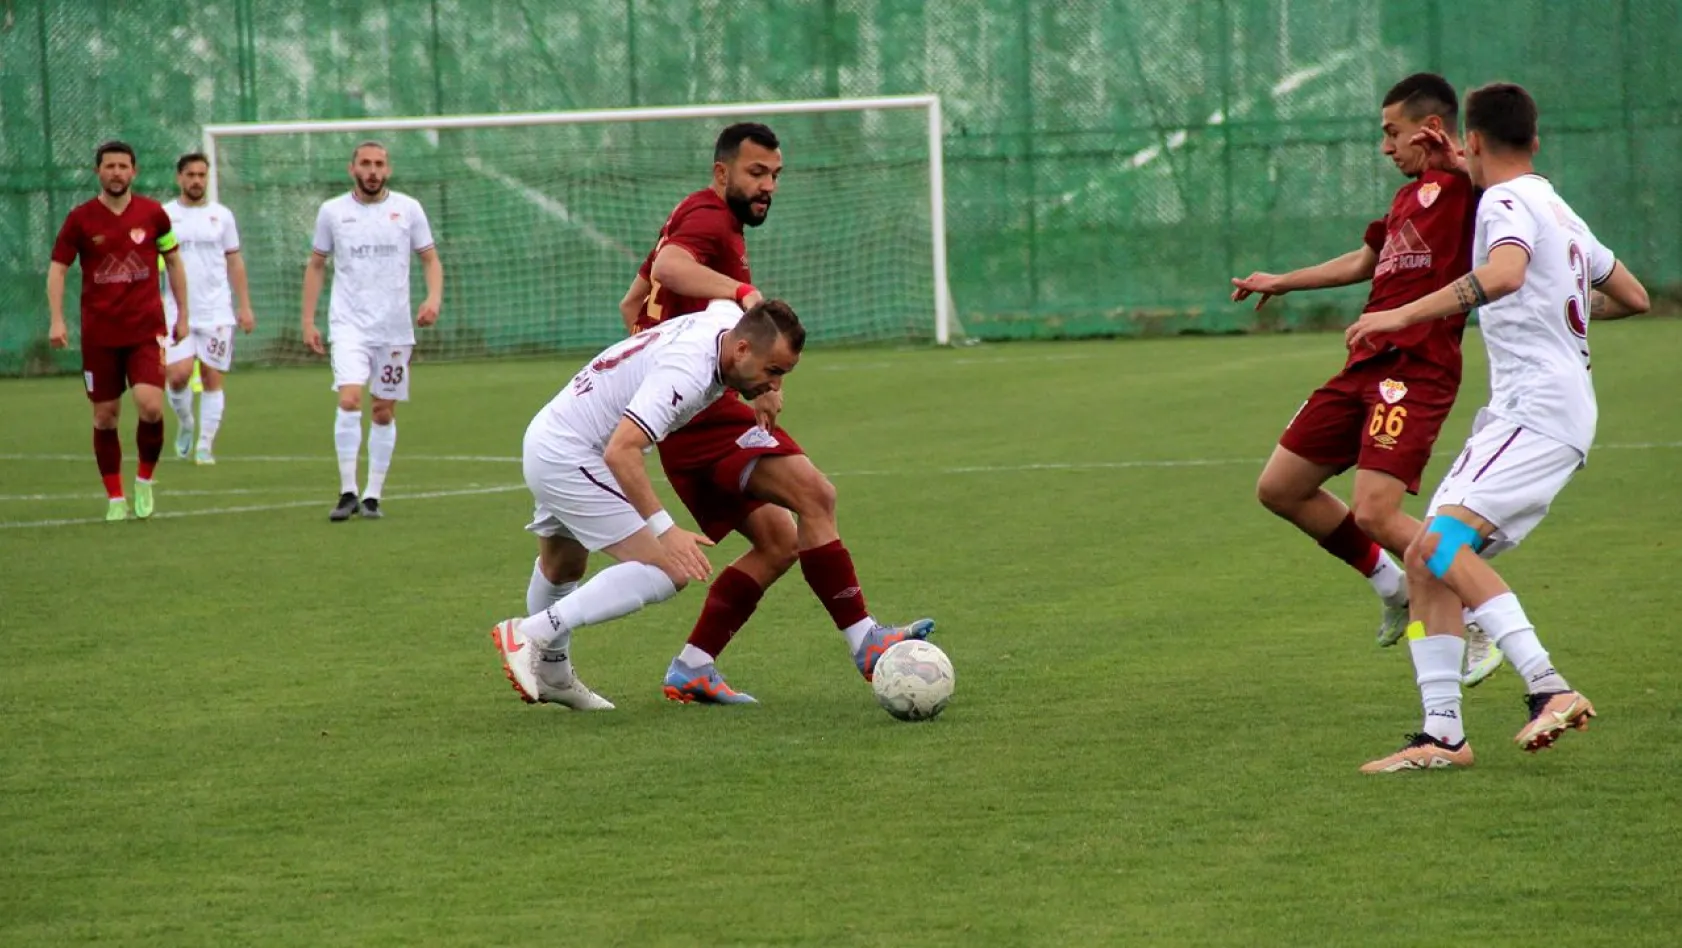 Elazığspor 0 - 2 Edirnespor